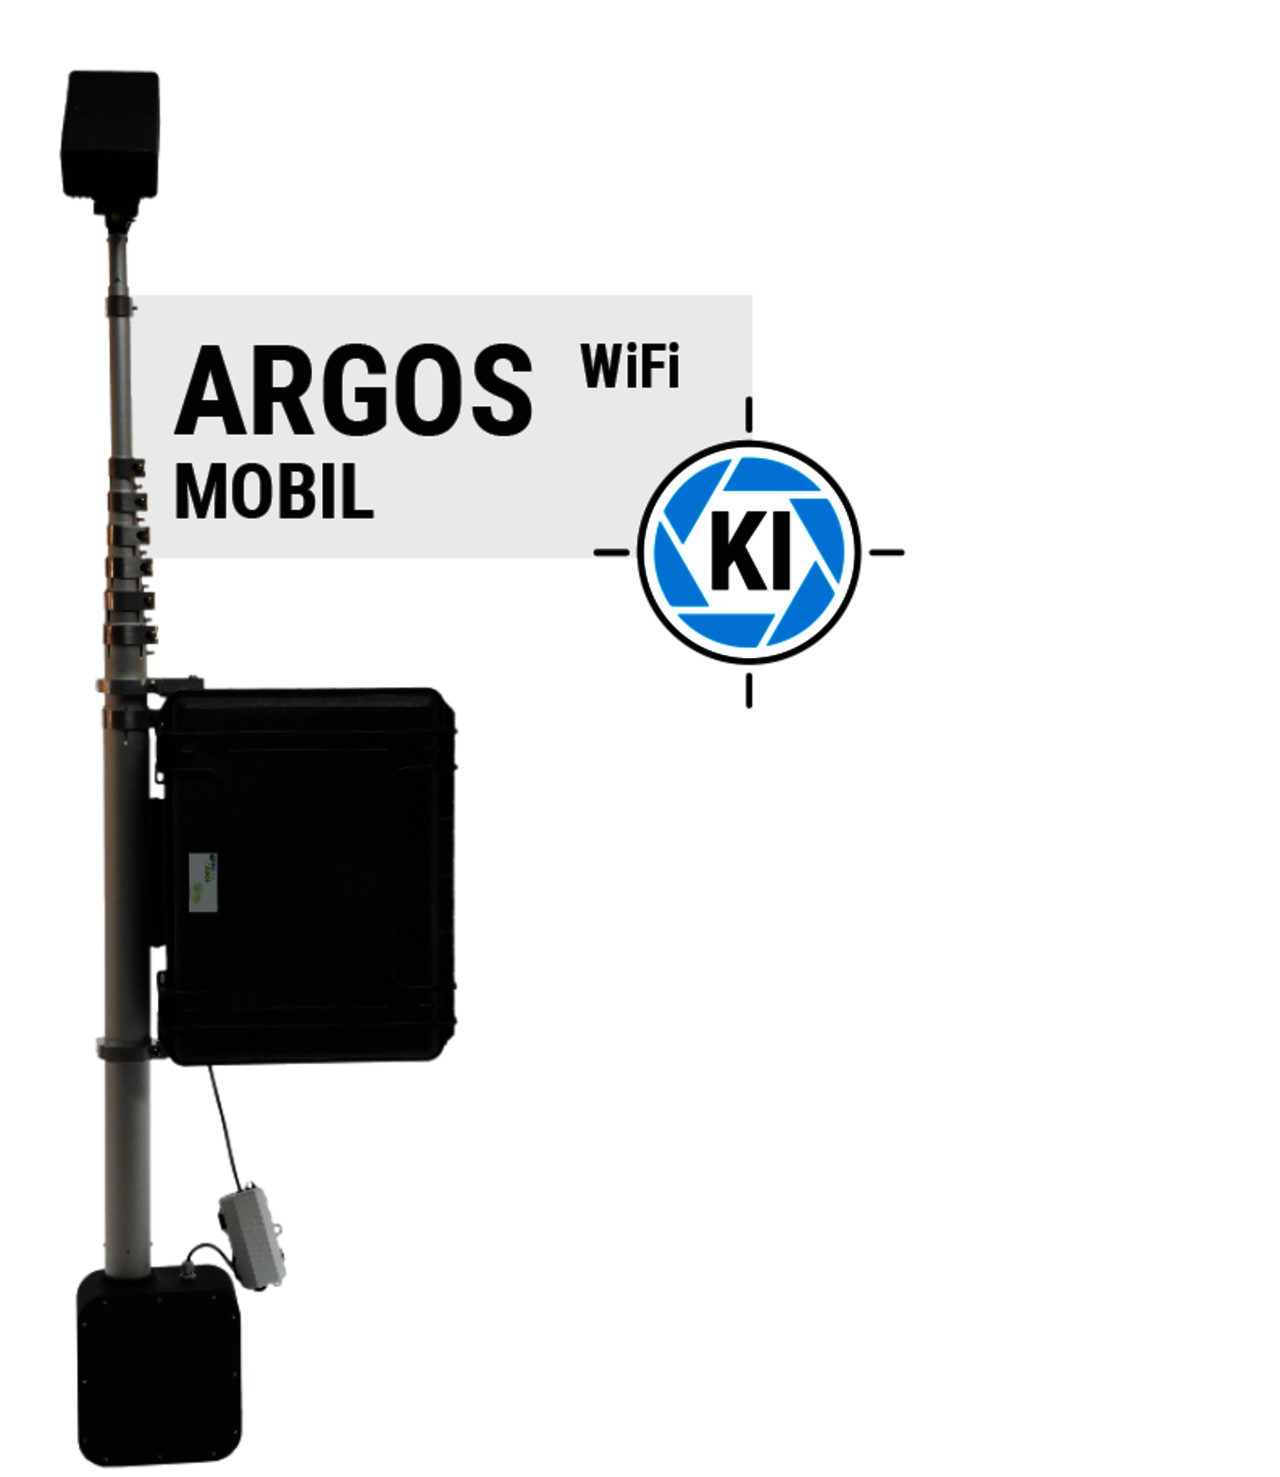 ARGOS mobil WiFi - künstliche Intelligenz